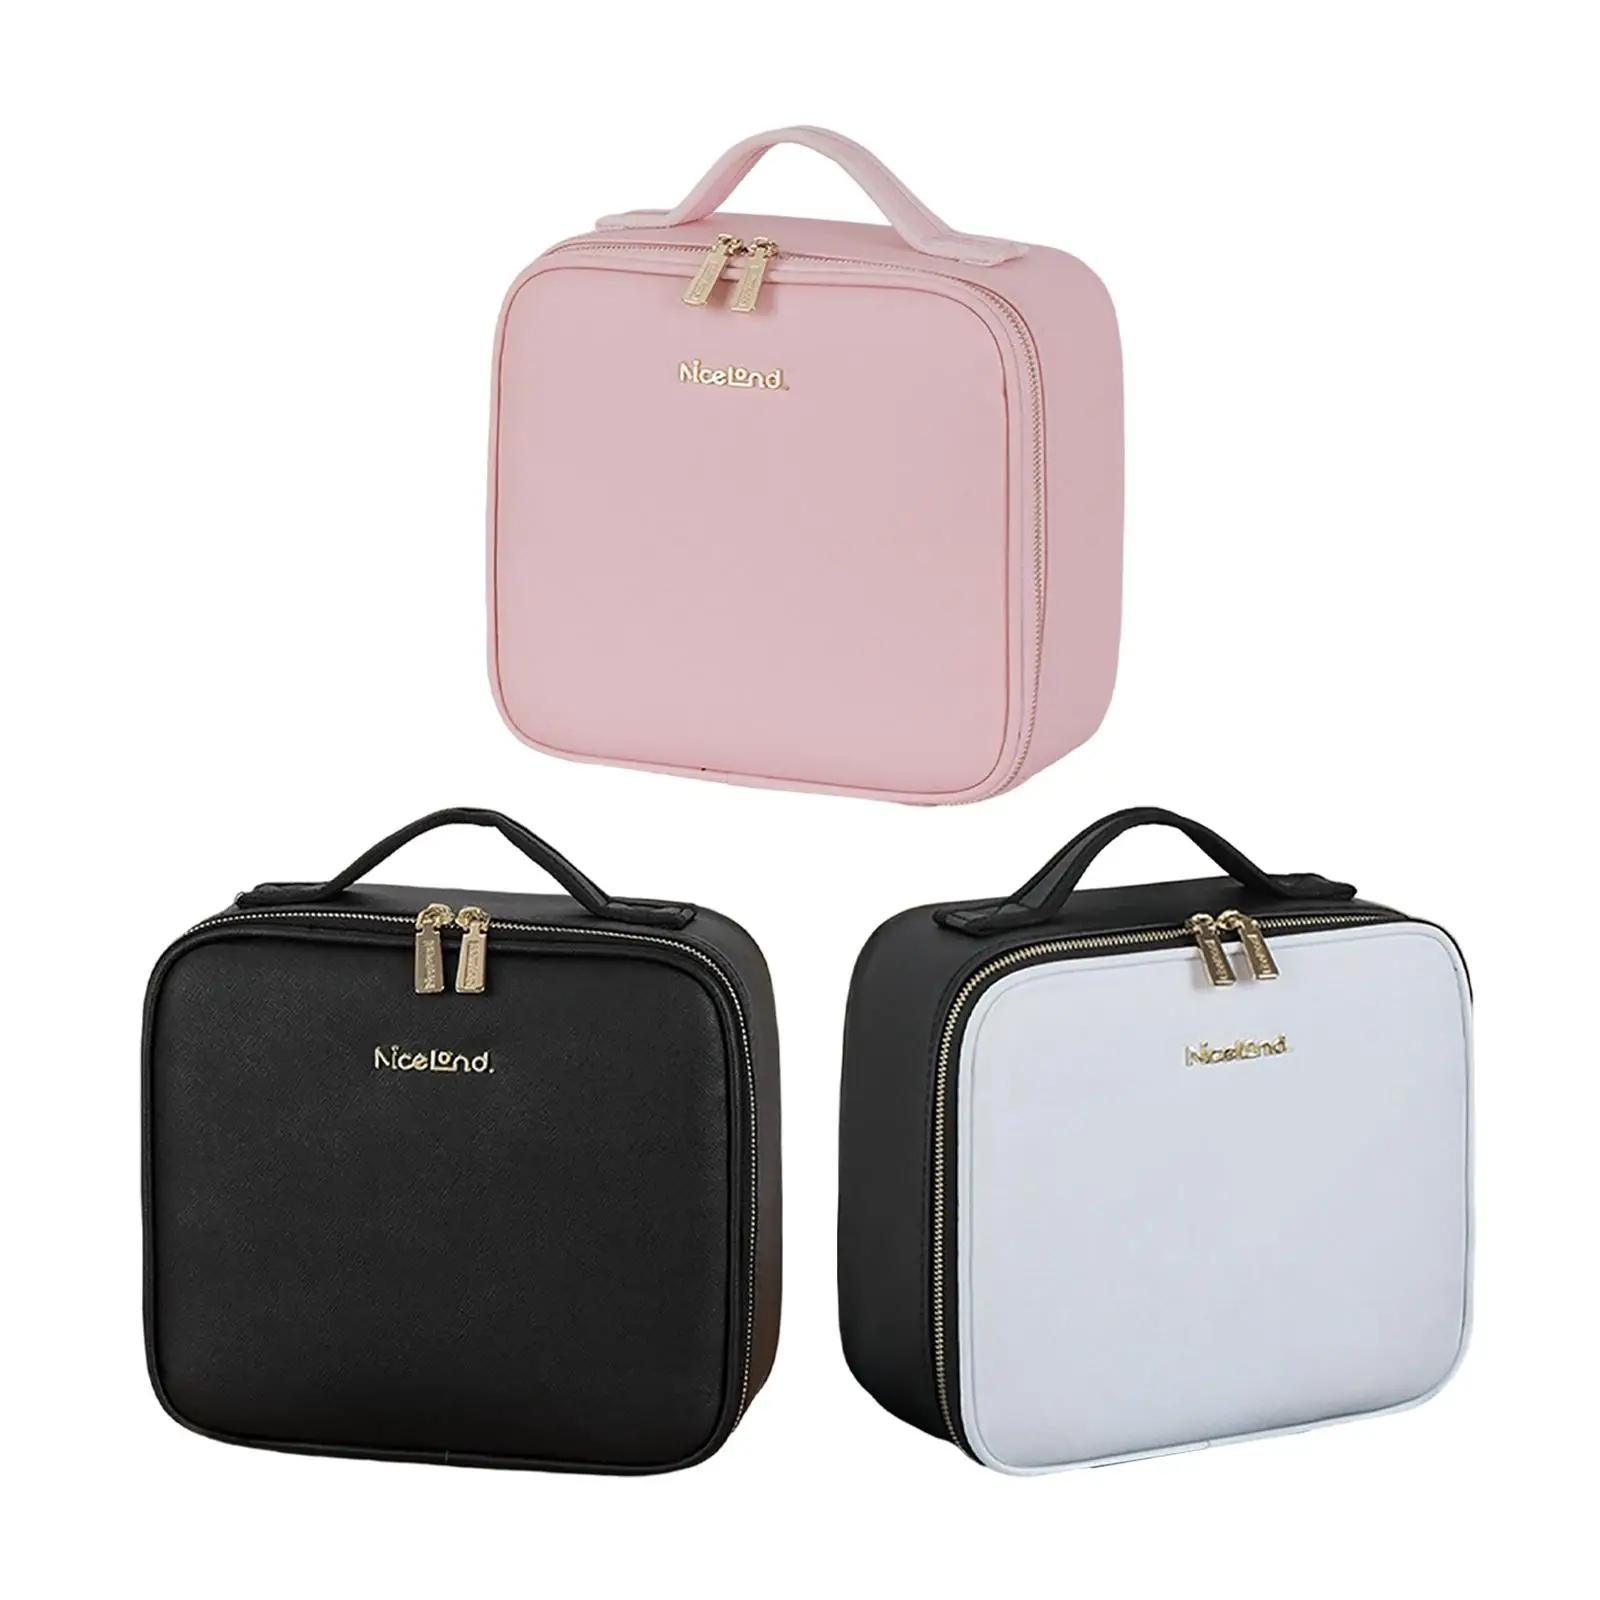 Makeup Case with Adjustable Brightness Storage Bag for Girls Gift